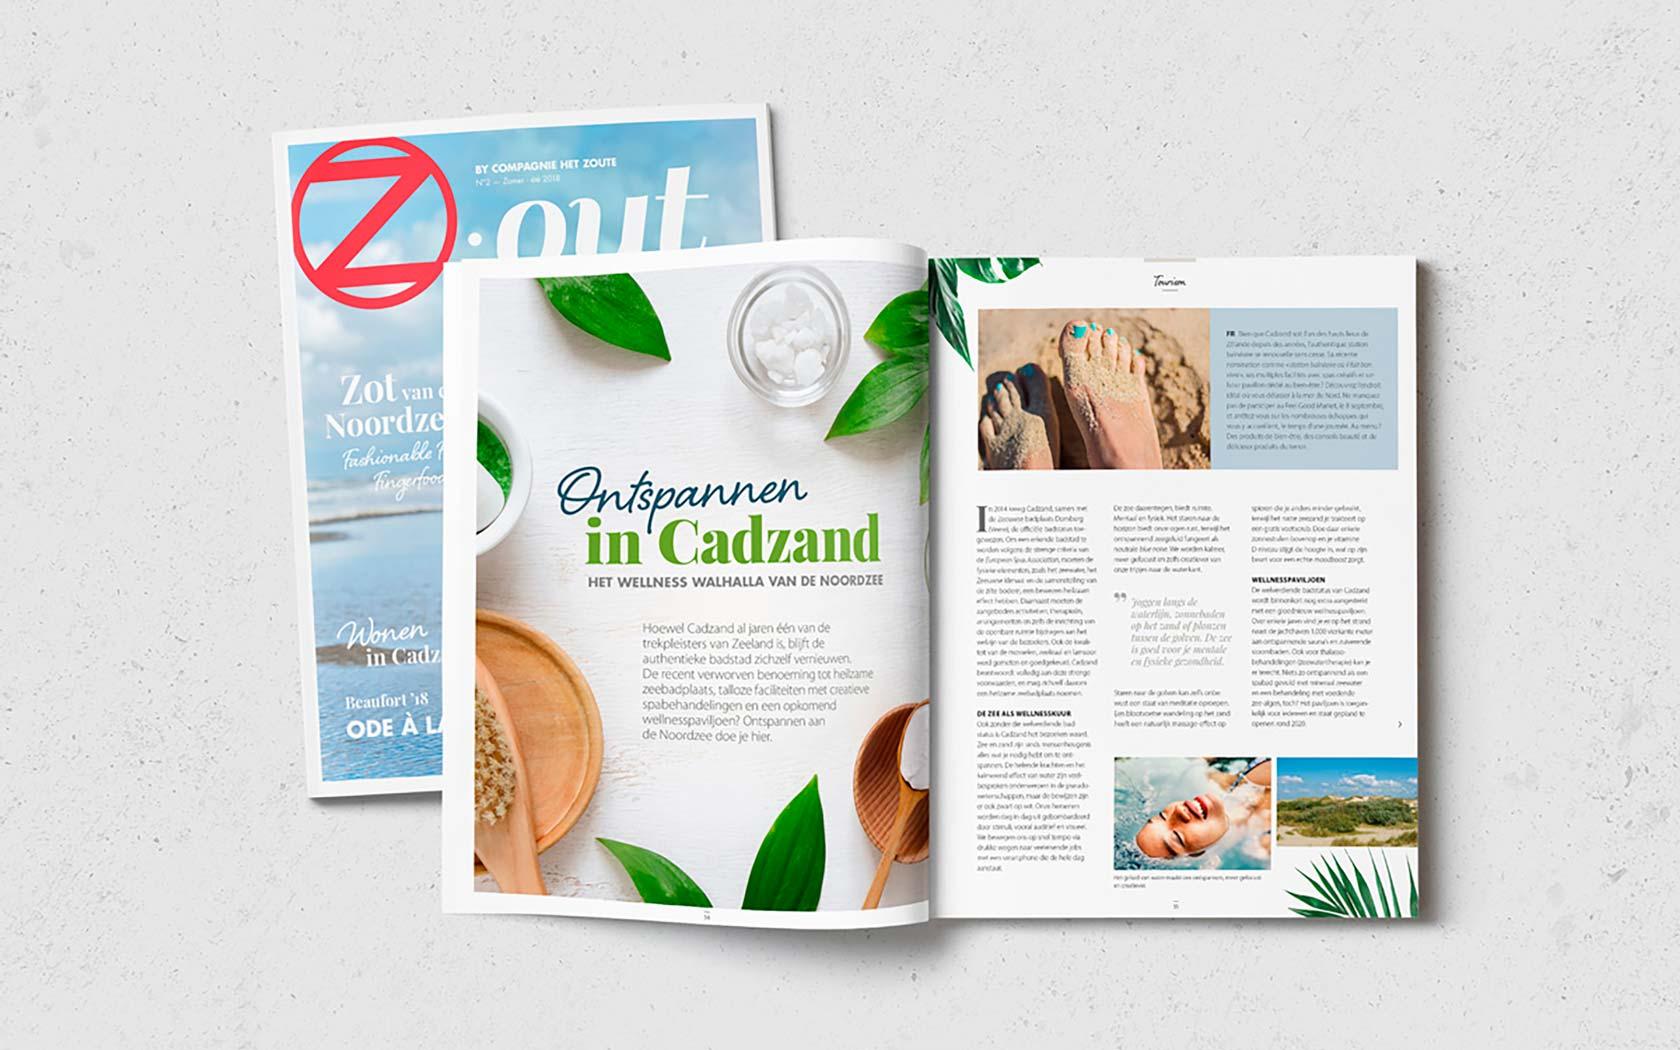 Zout Magazine